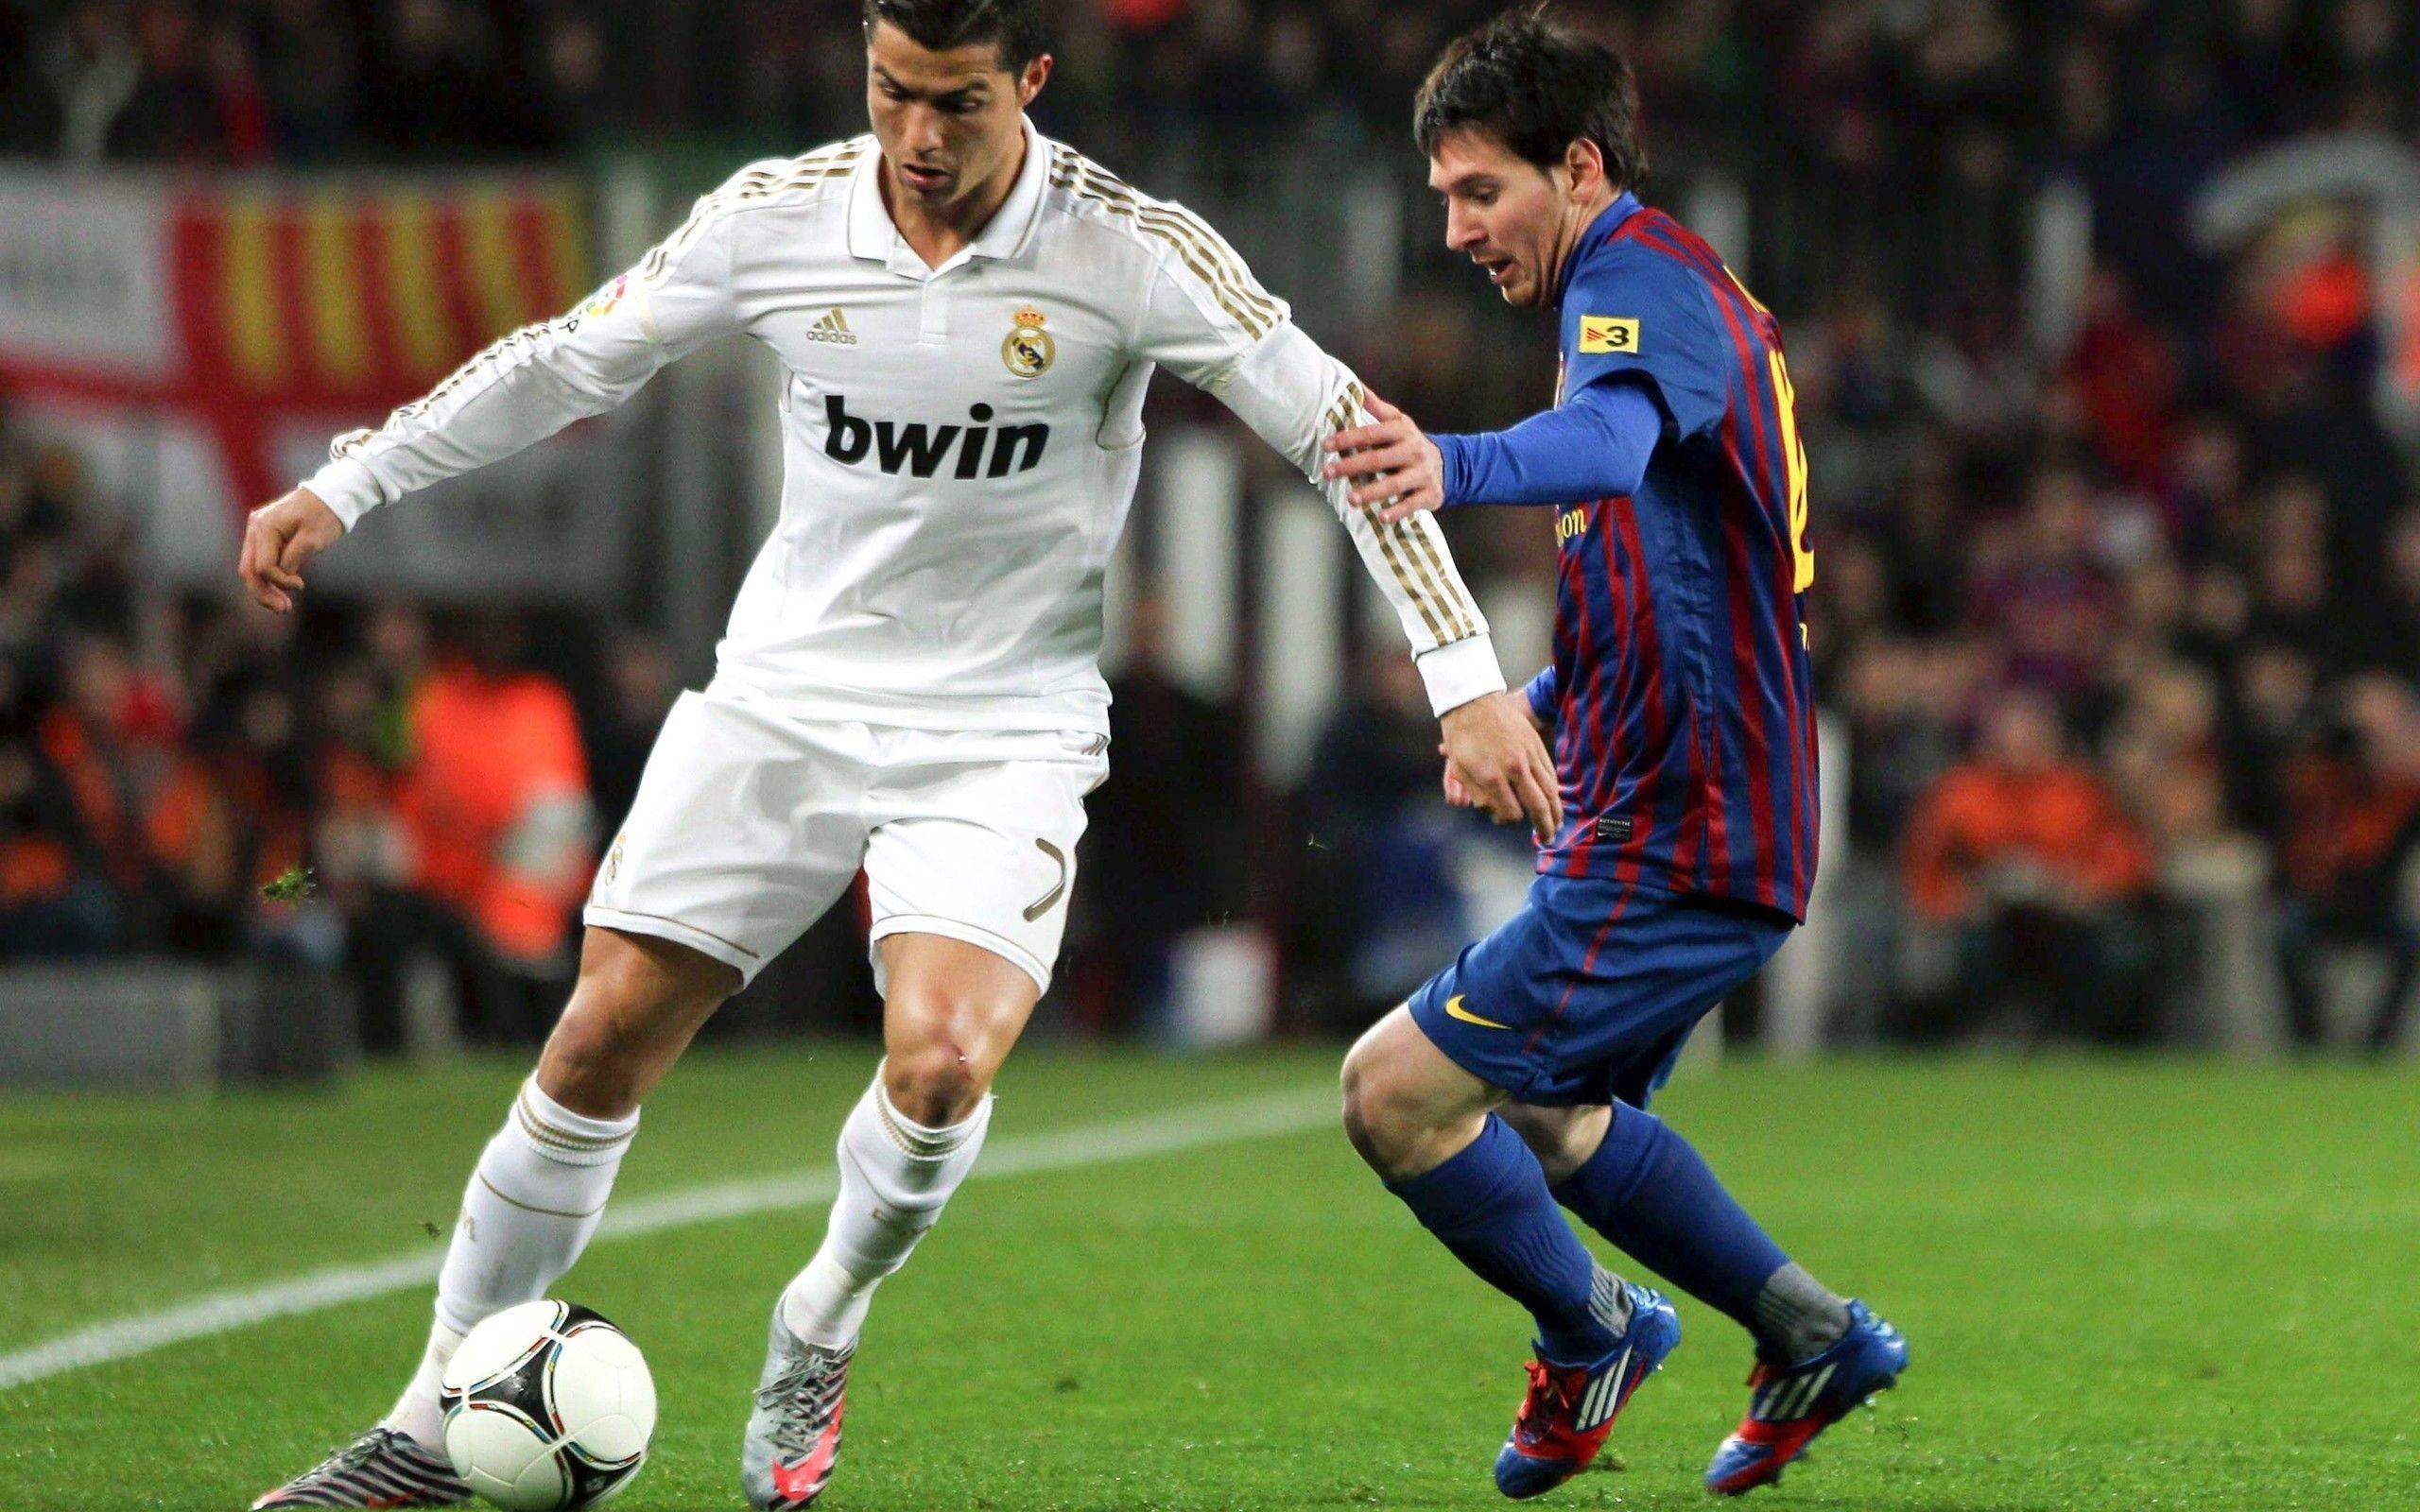 Lionel Messi vs Cristiano Ronaldo Wallpaper HD / Desktop